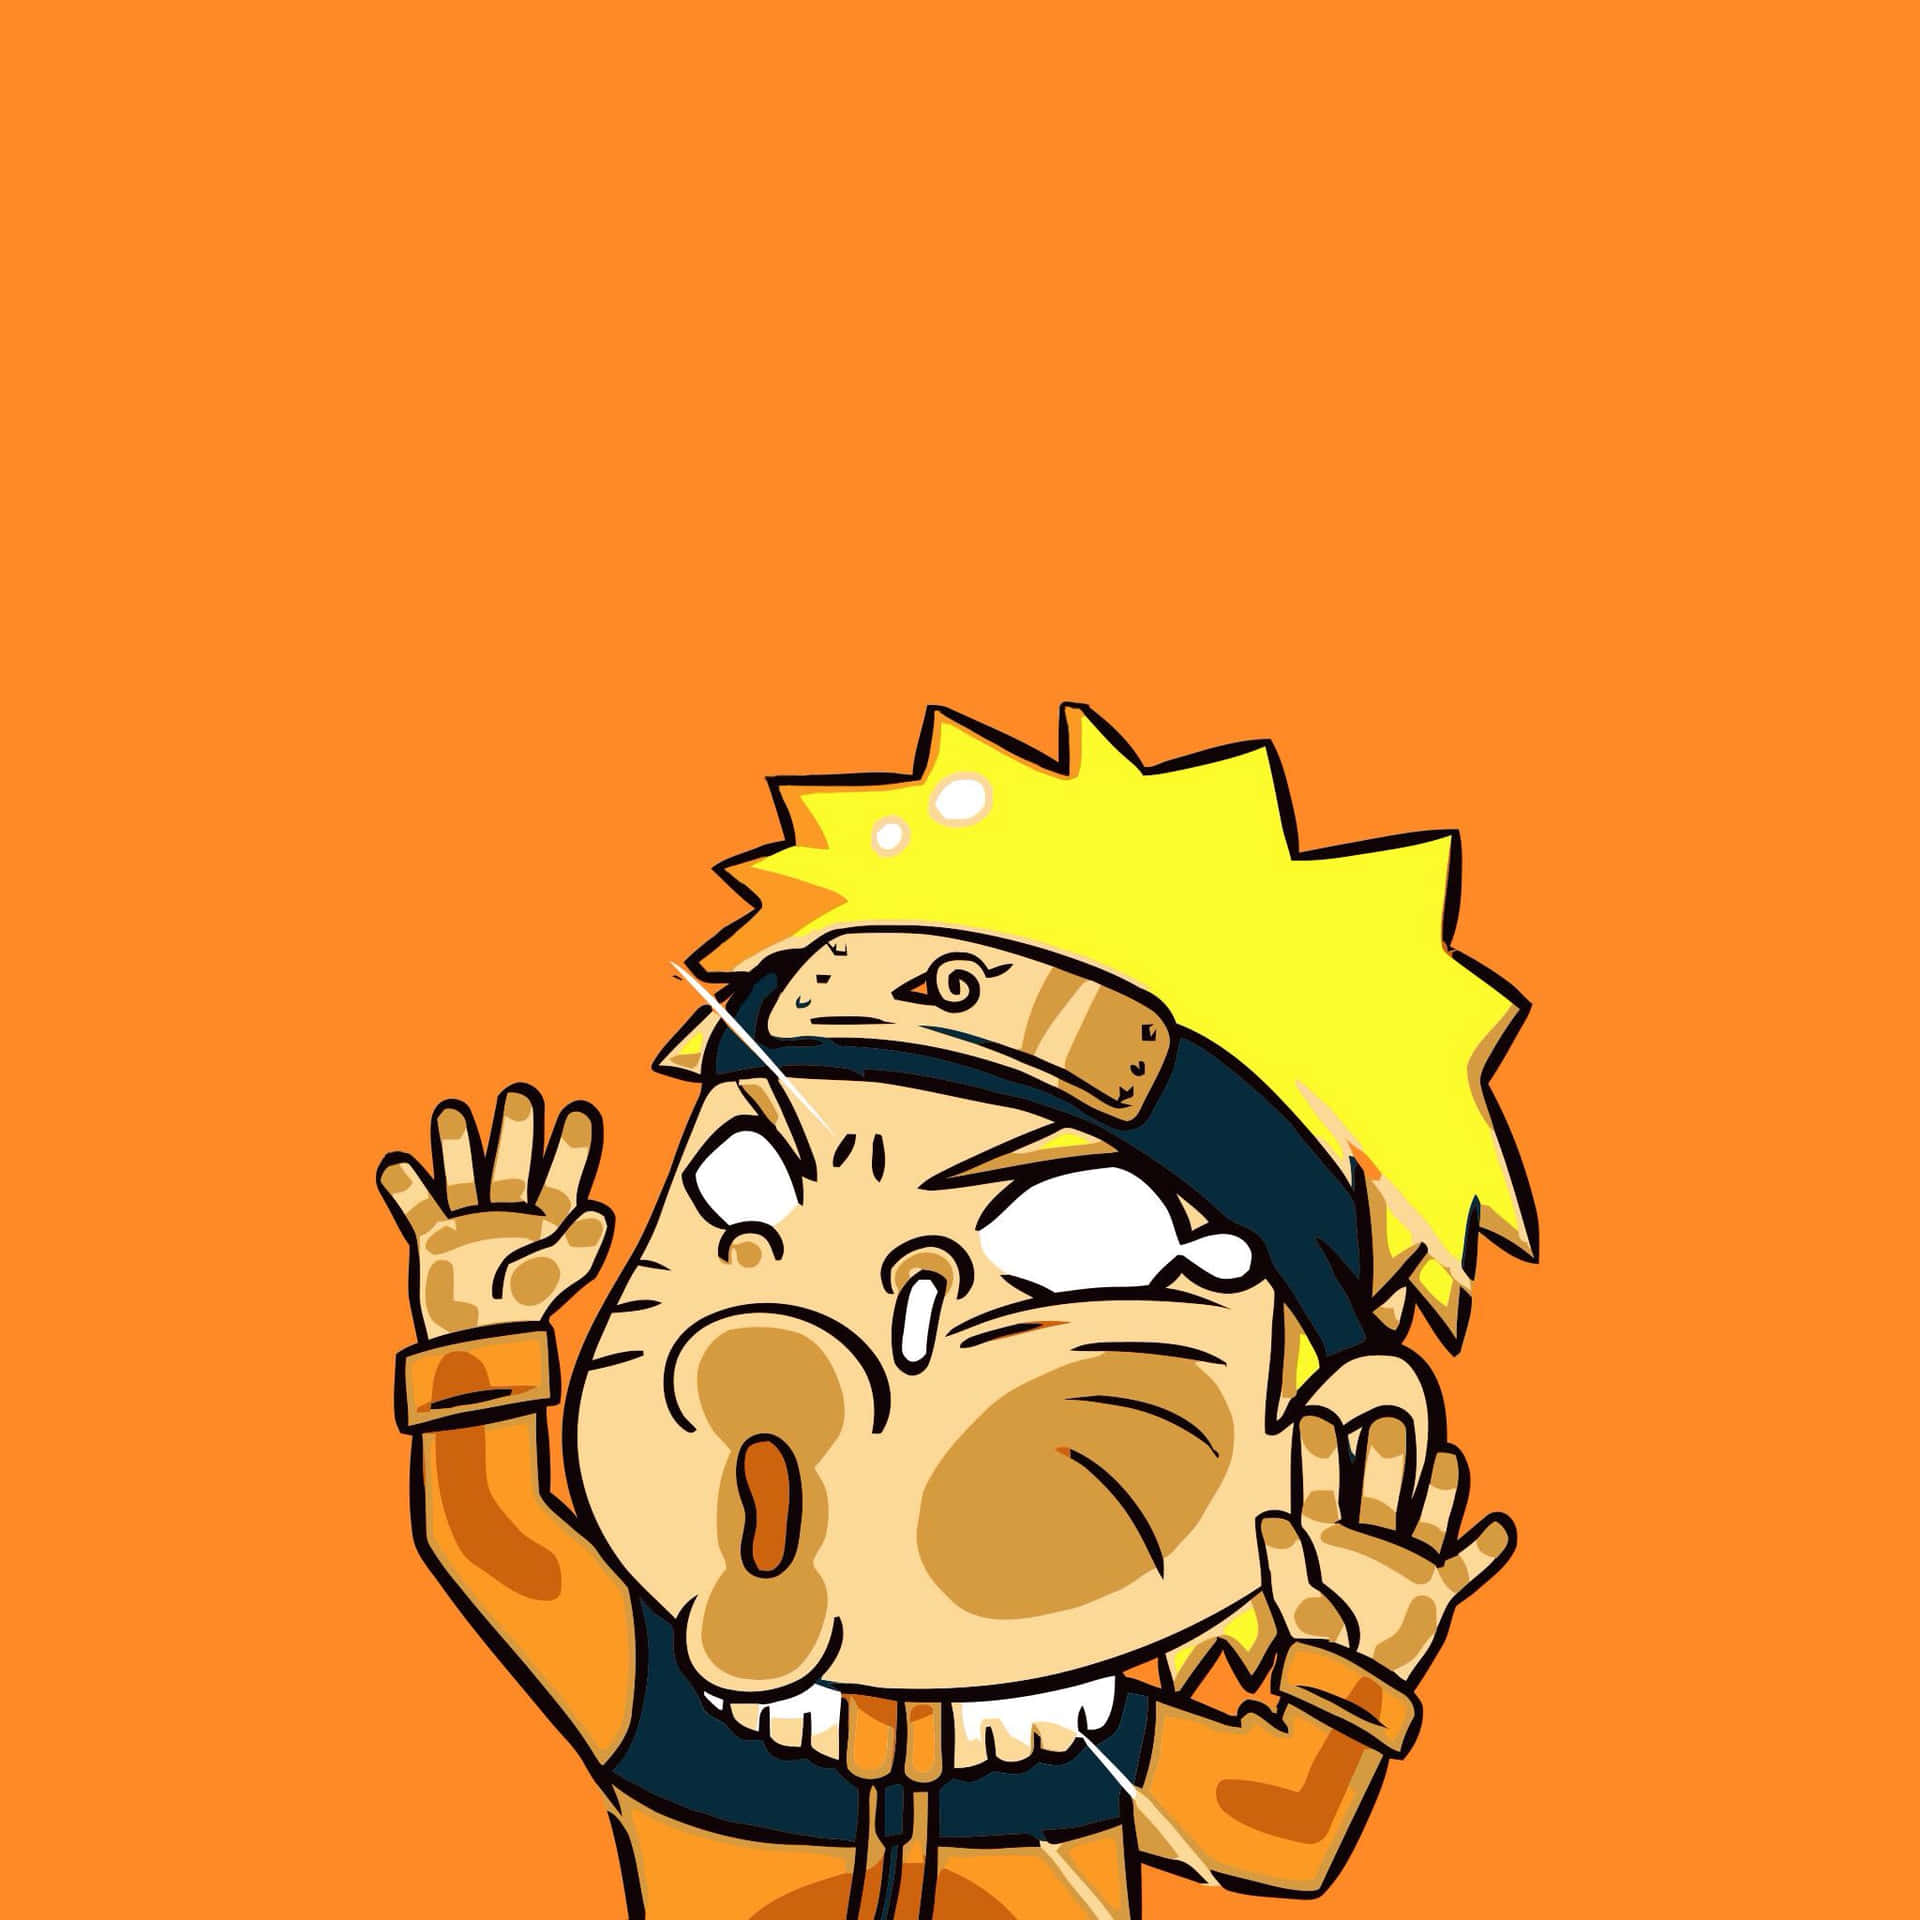 Free Naruto Chibi Wallpaper Downloads, [100+] Naruto Chibi Wallpapers for  FREE 